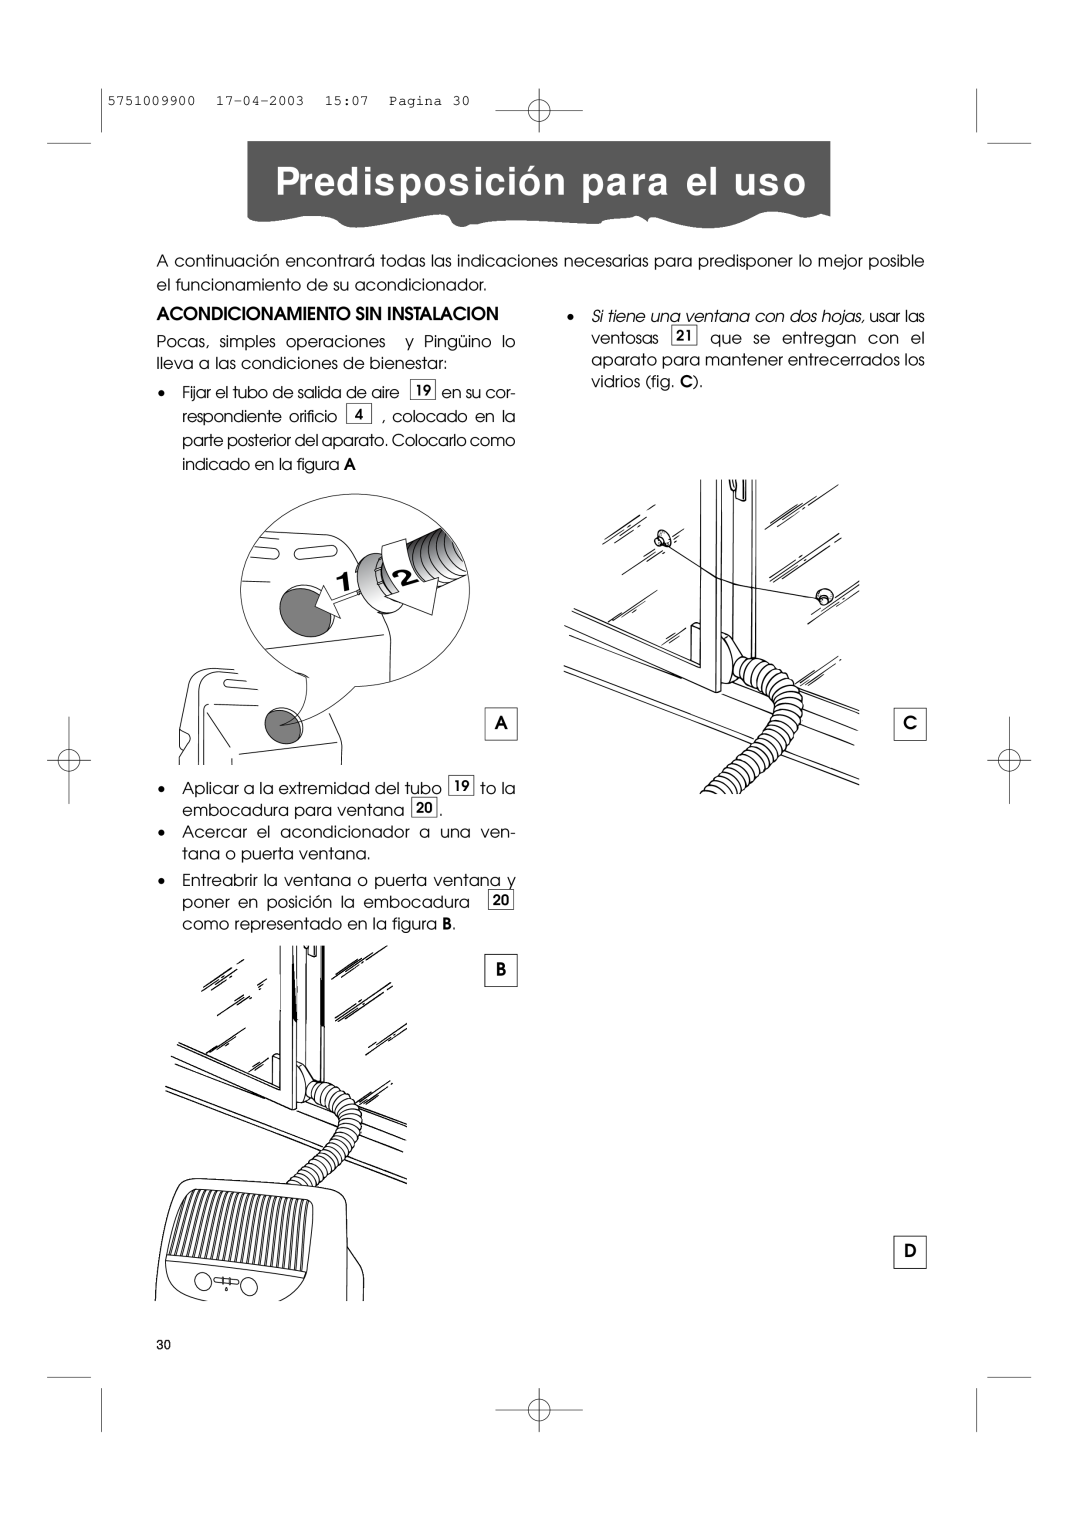 DeLonghi Pac 1000 manual Predisposición para el uso, Acondicionamiento Sin Instalacion 